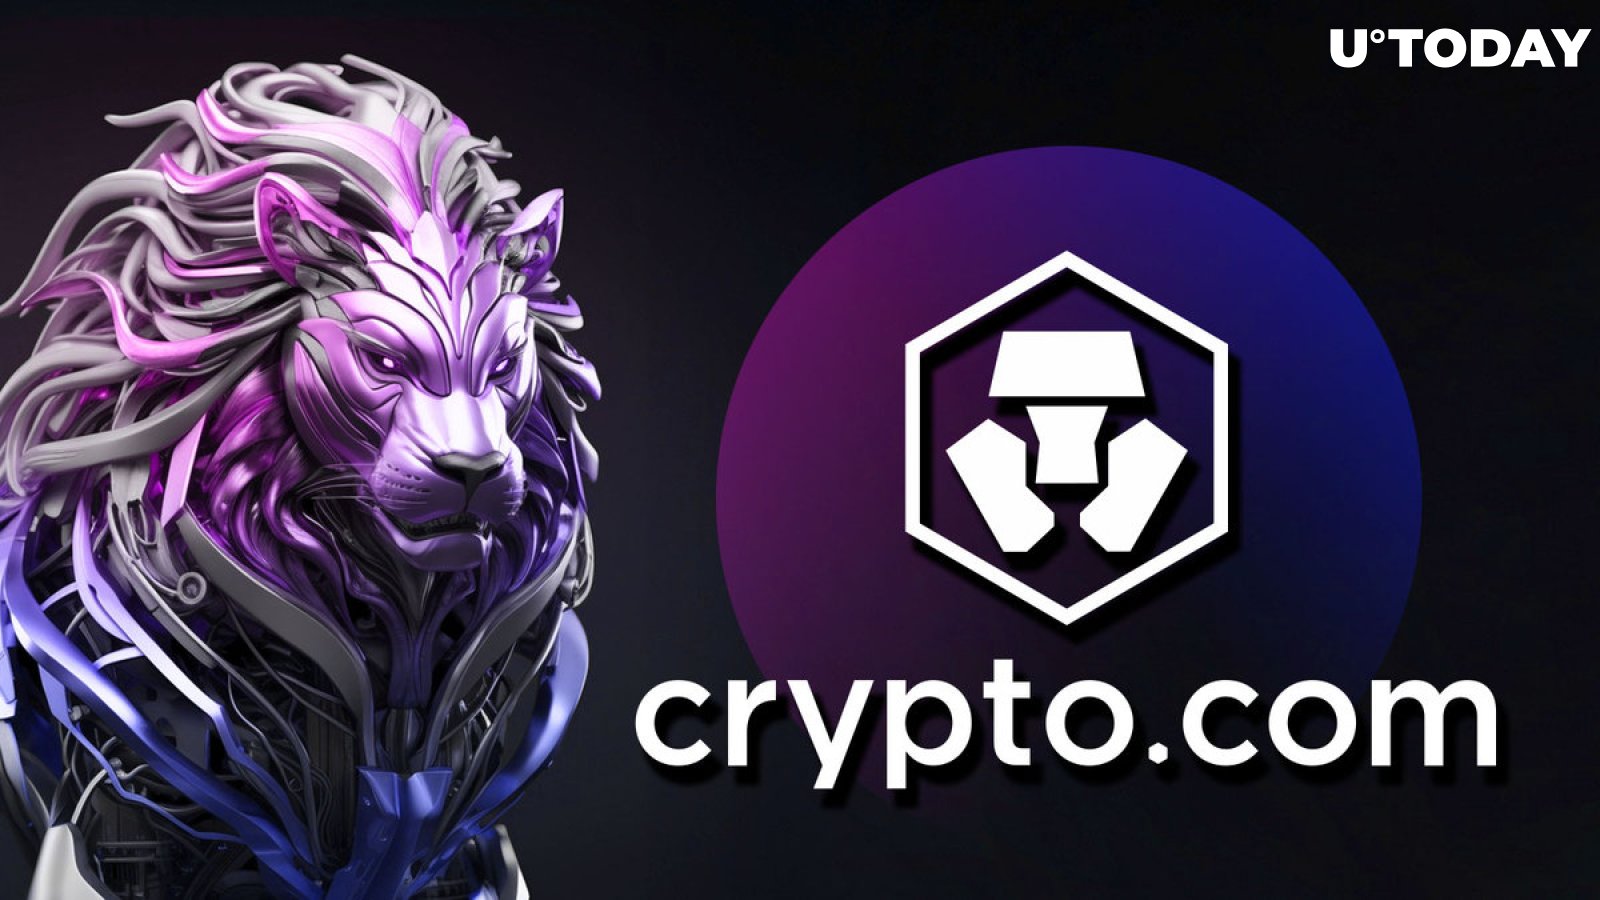 Crypto.com Announces Season 2 of Loaded Lions: Mane City Kicking Off